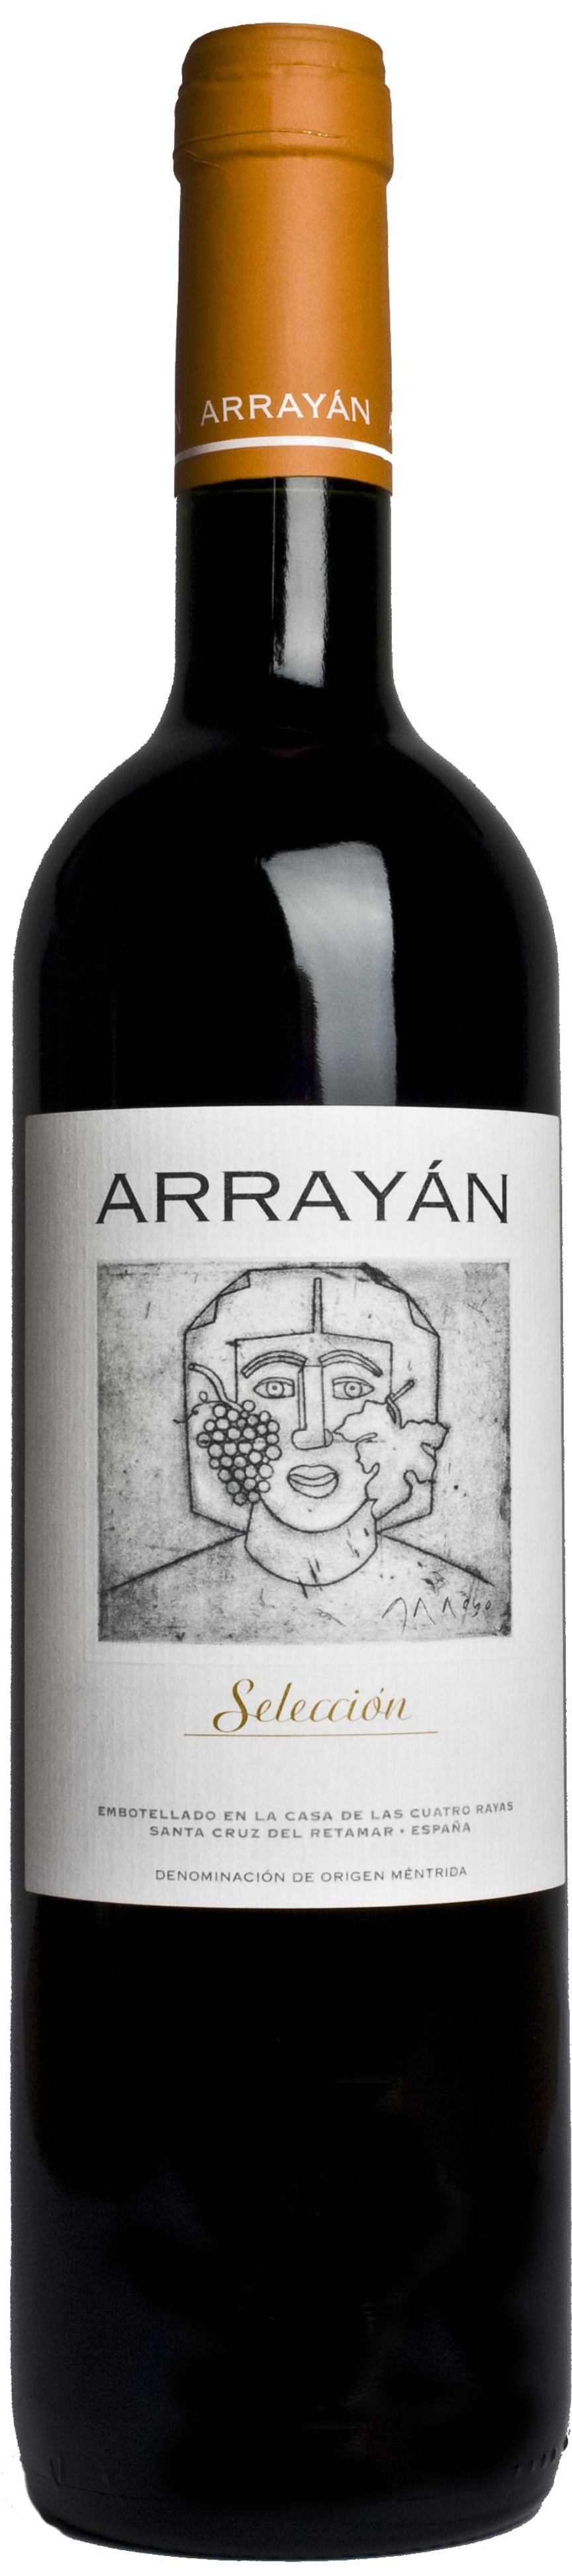 Imagen de la botella de Vino Arrayán Selección